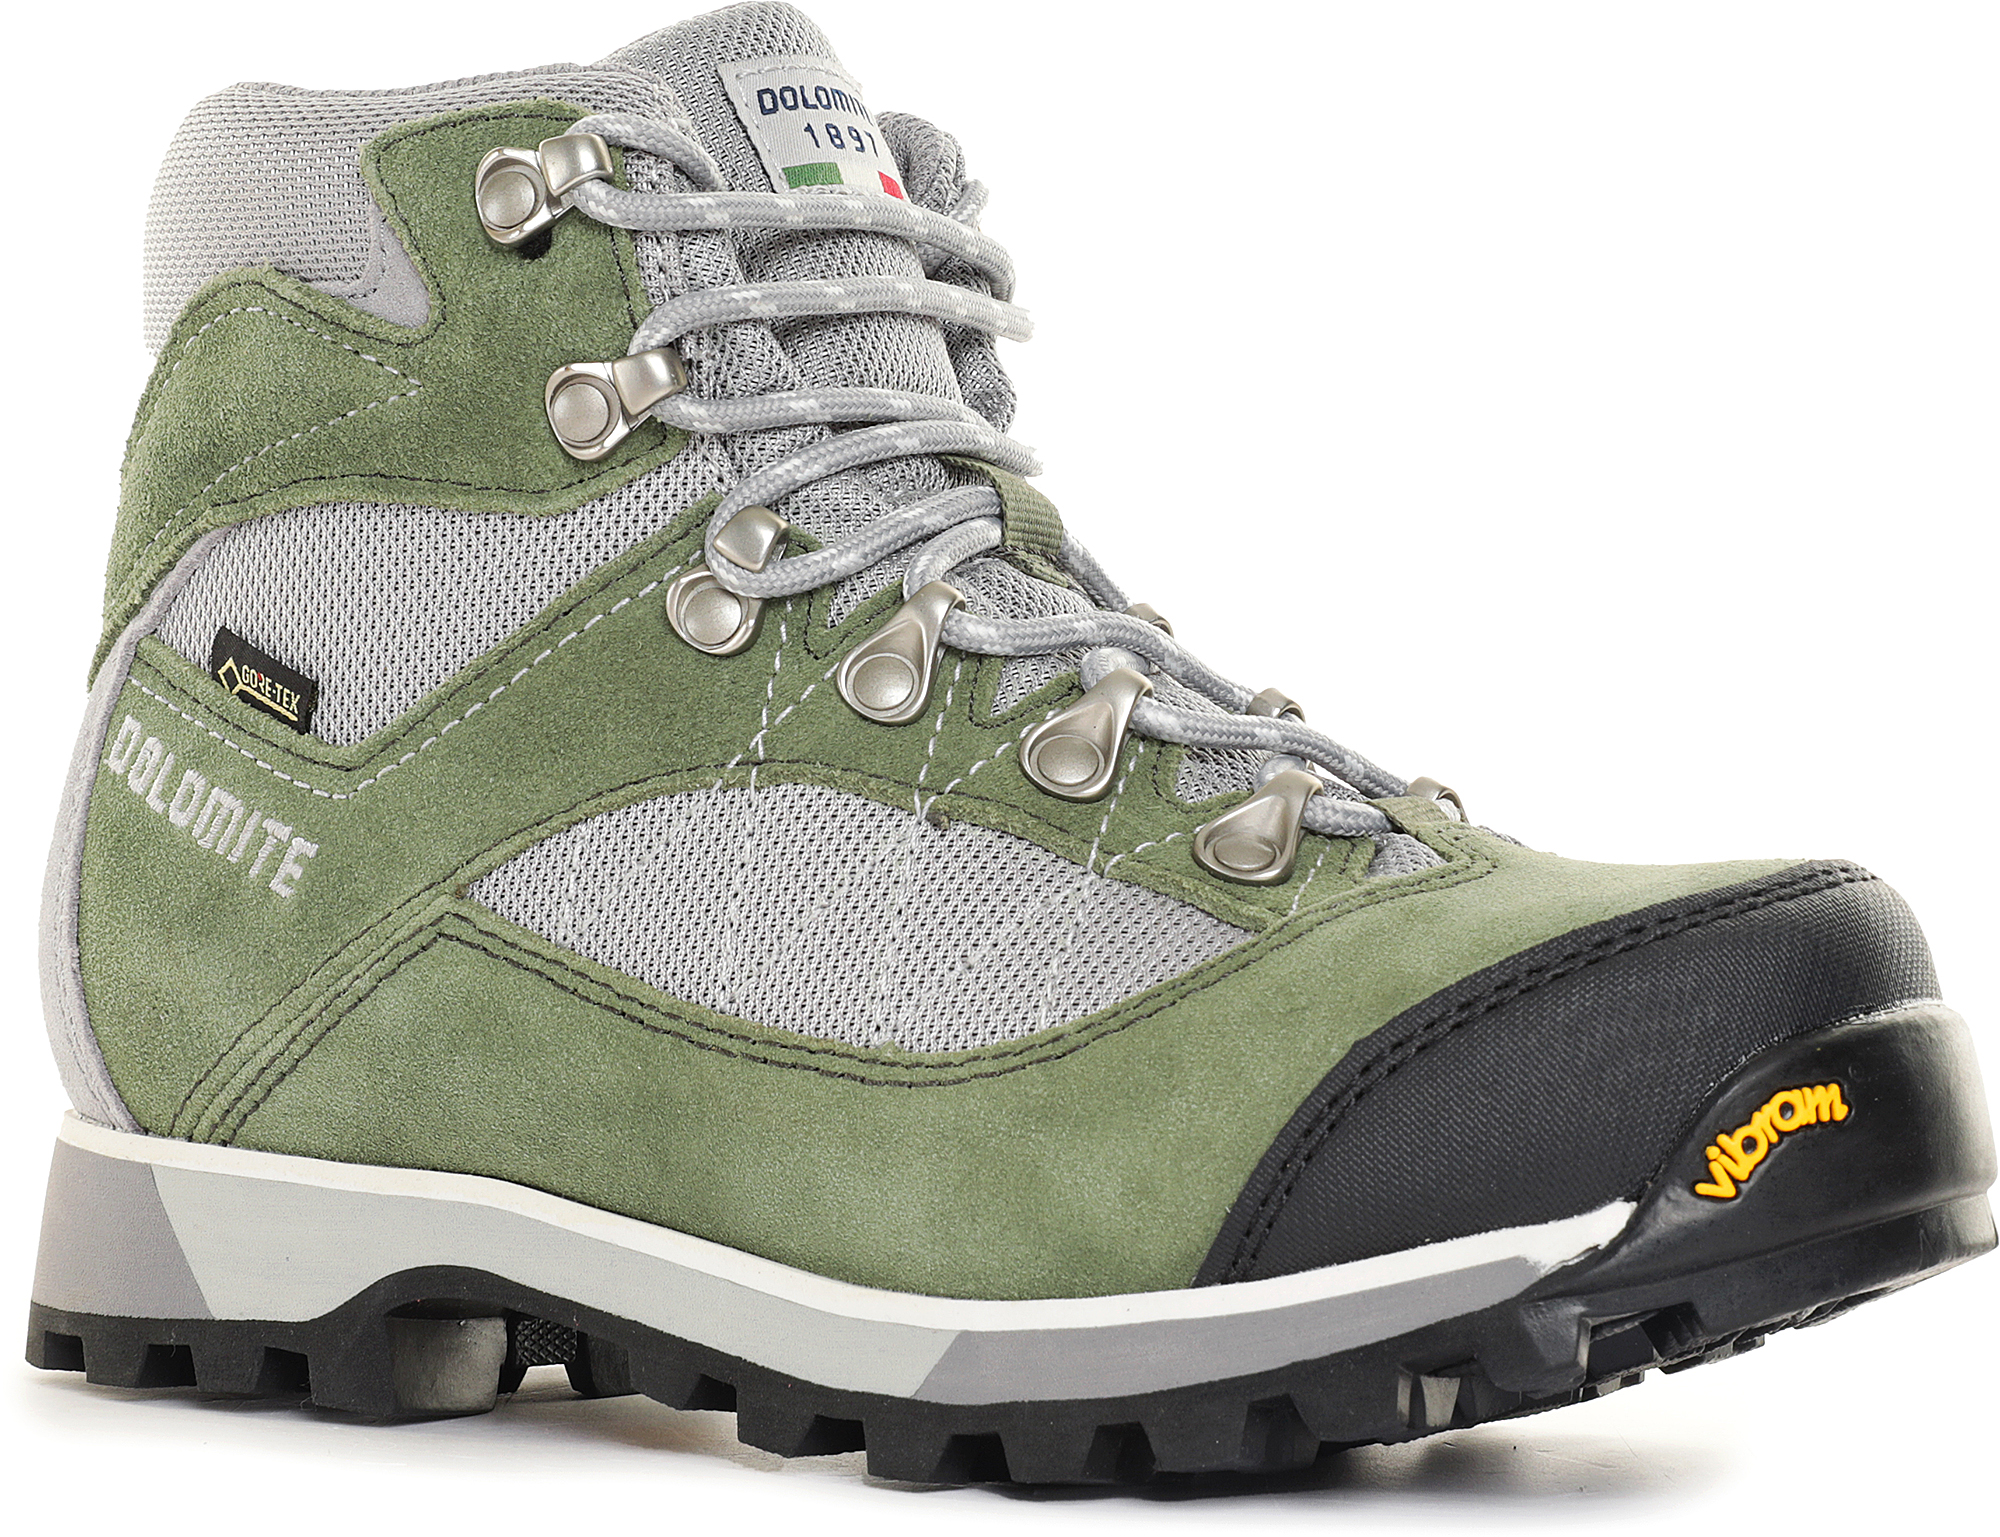 Ботинки Dolomite Zernez GTX W's Olive Green/Aluminium Grey